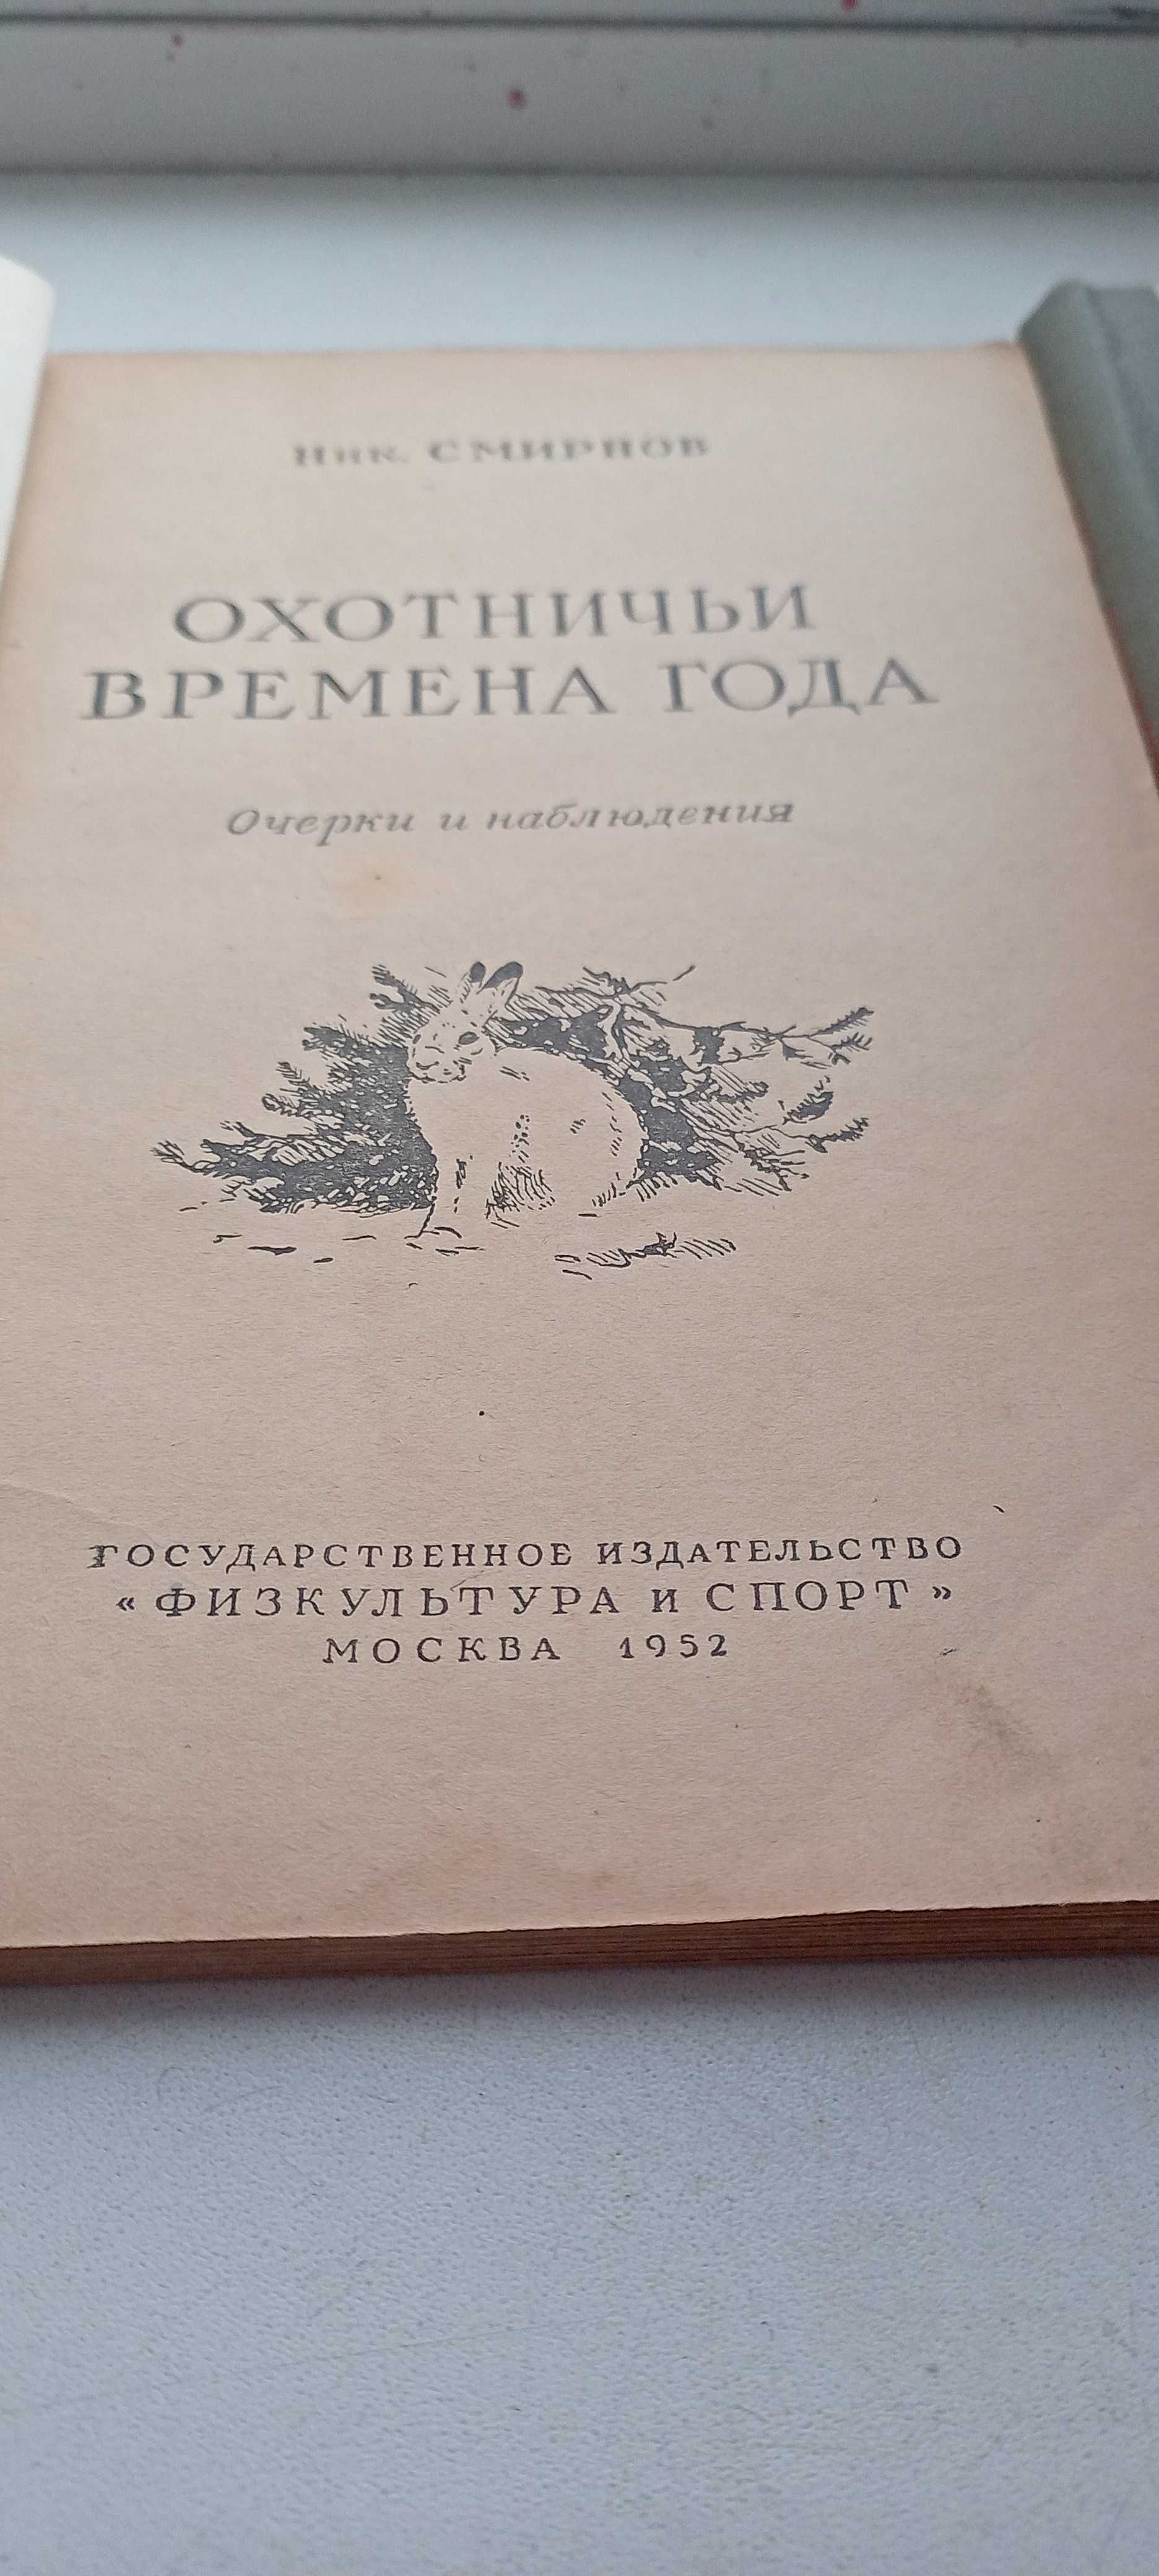 Книги о охоте / Разные